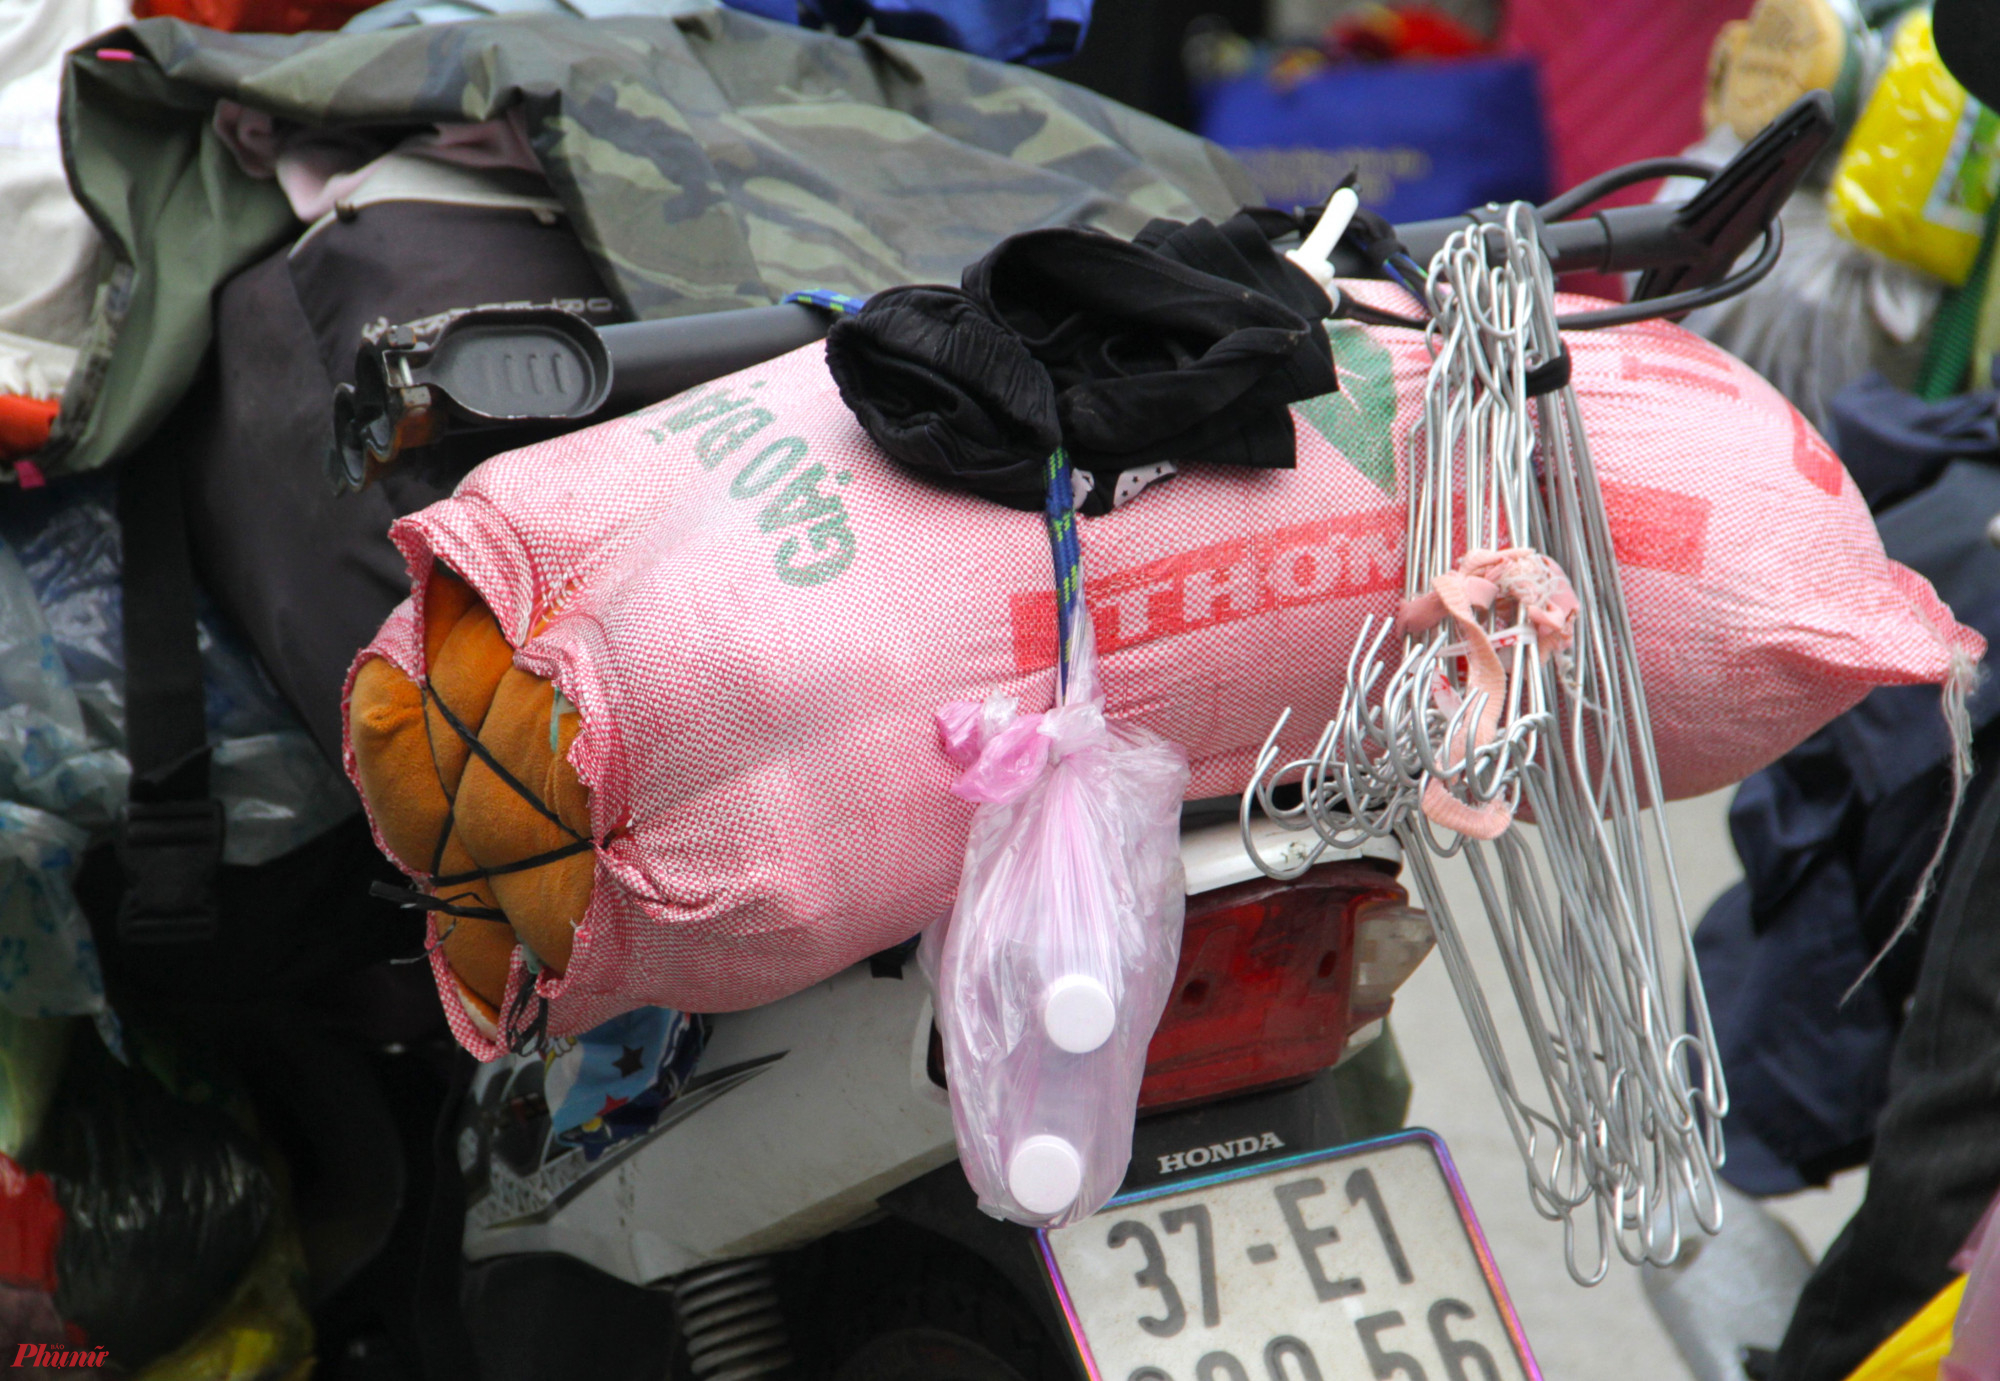 Không chỉ quần áo, nhiều vật dụng như chăn, chiếu, móc treo quần áo… cũng được “nhét” lên xe máy để hồi hương.